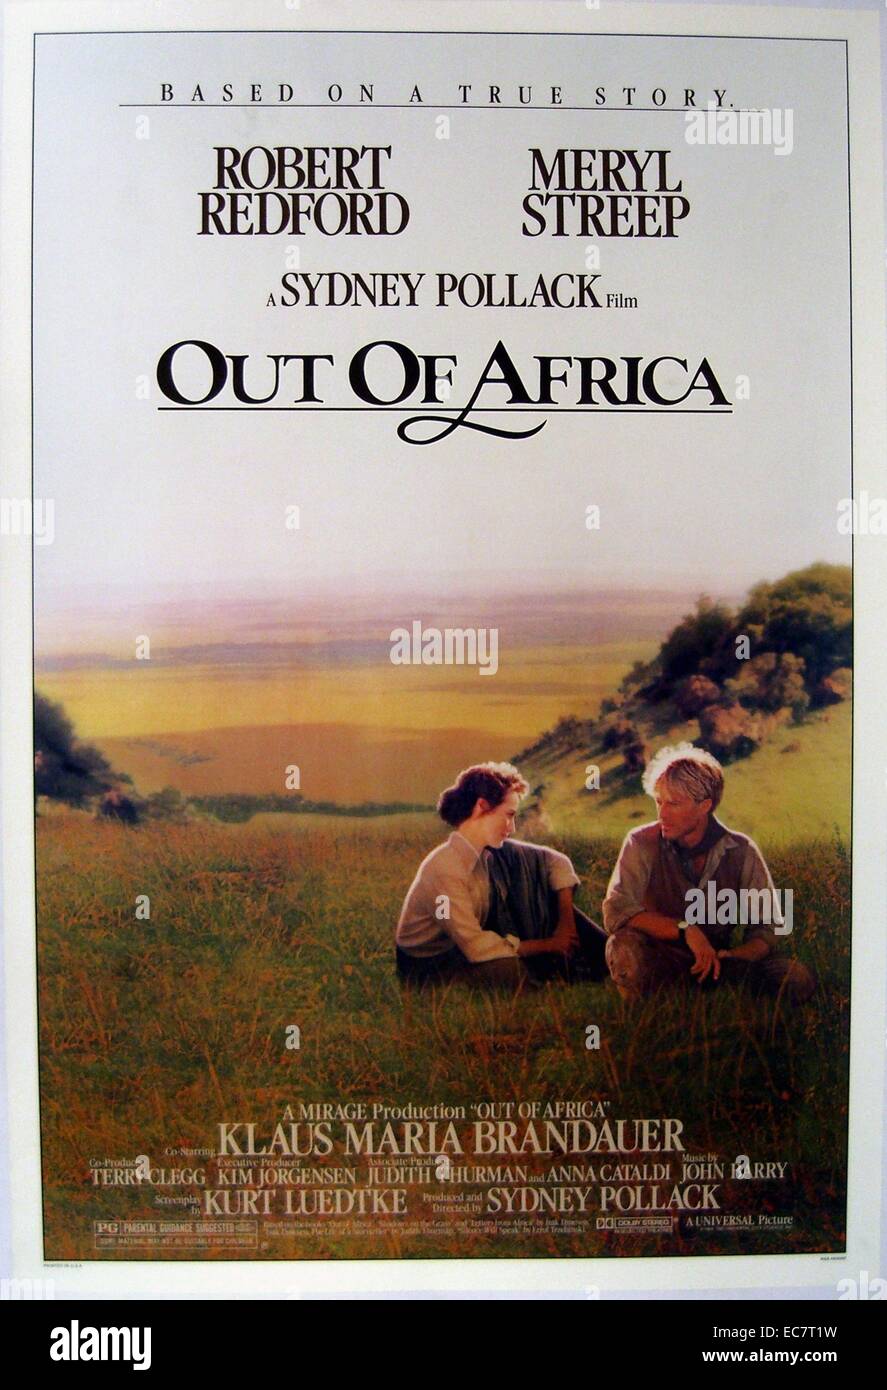 Aus Afrika ist ein 1985 amerikanischen romantischen Film unter der Regie von Sydney Pollack hergestellt und mit Robert Redford und Meryl Streep. Der Film basiert lose auf dem autobiographischen Buch aus Afrika von Isak Dinesen geschrieben. Stockfoto